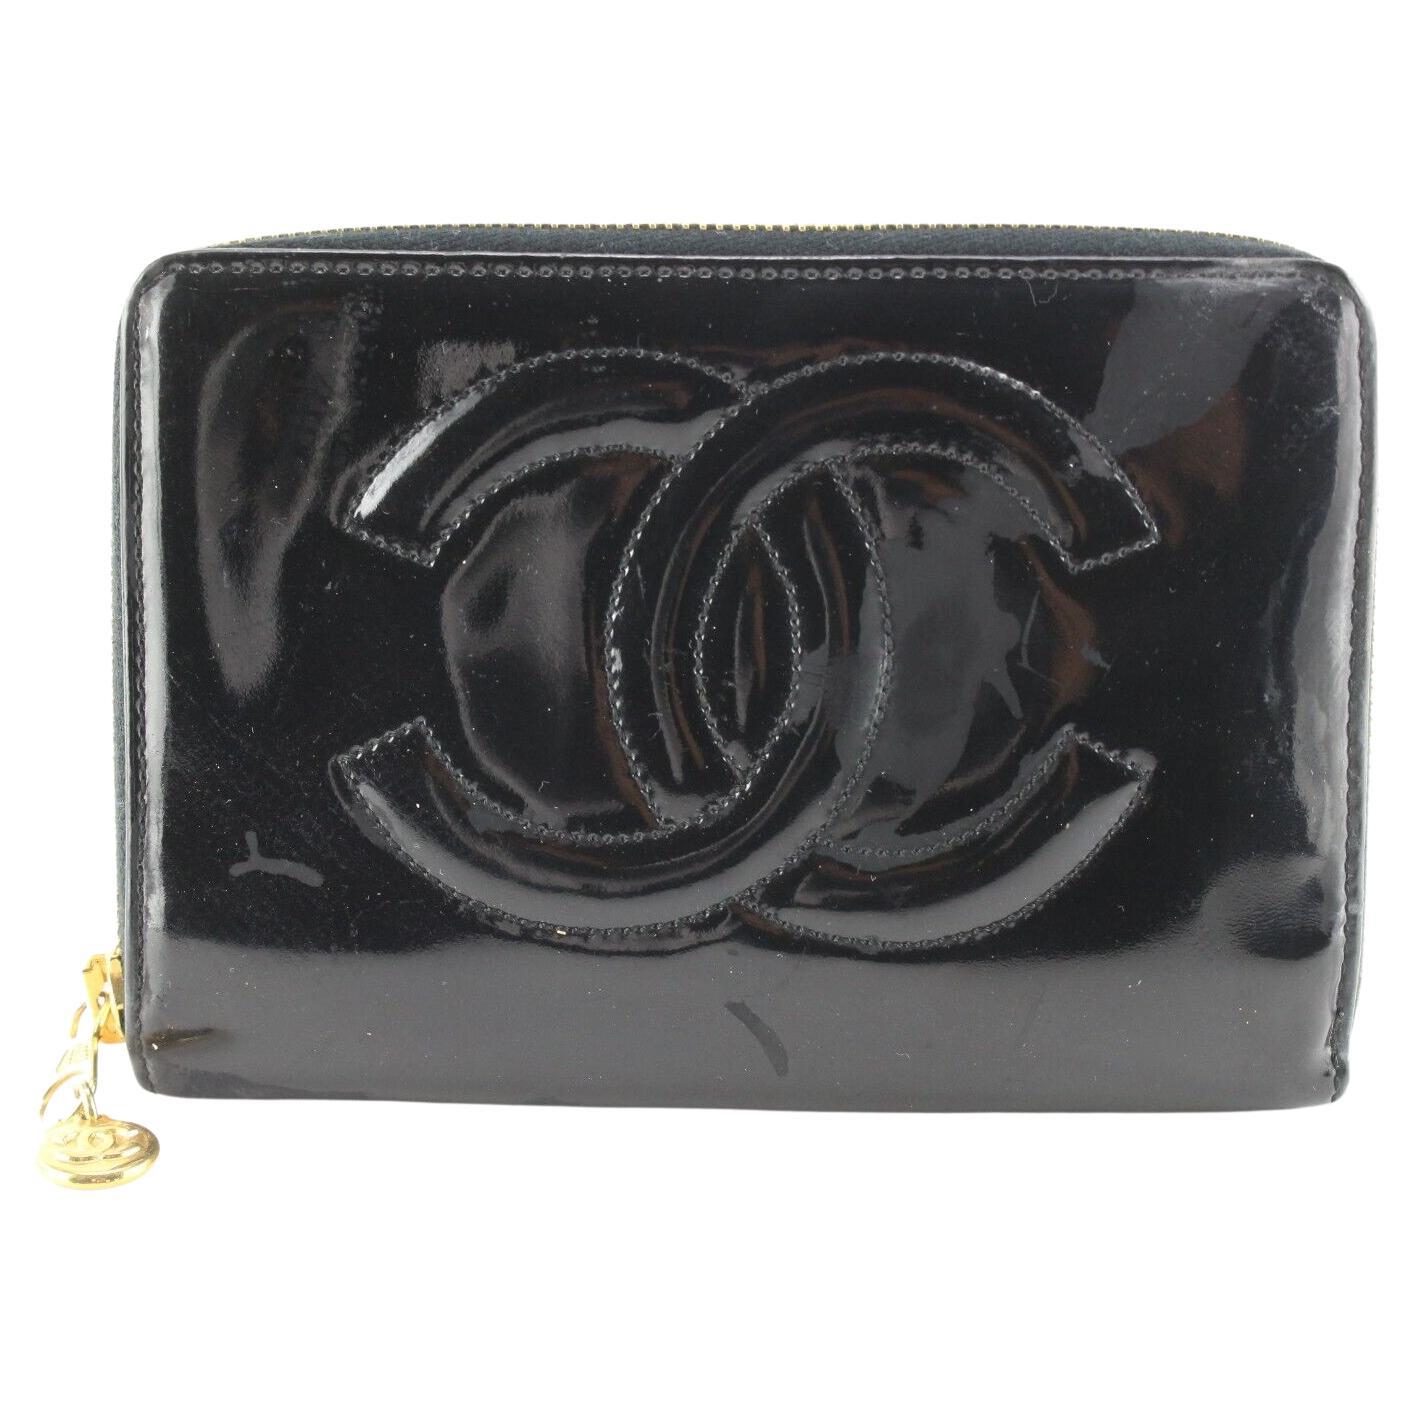 Chanel Black Patent Zip Case Pouch 1CC523K